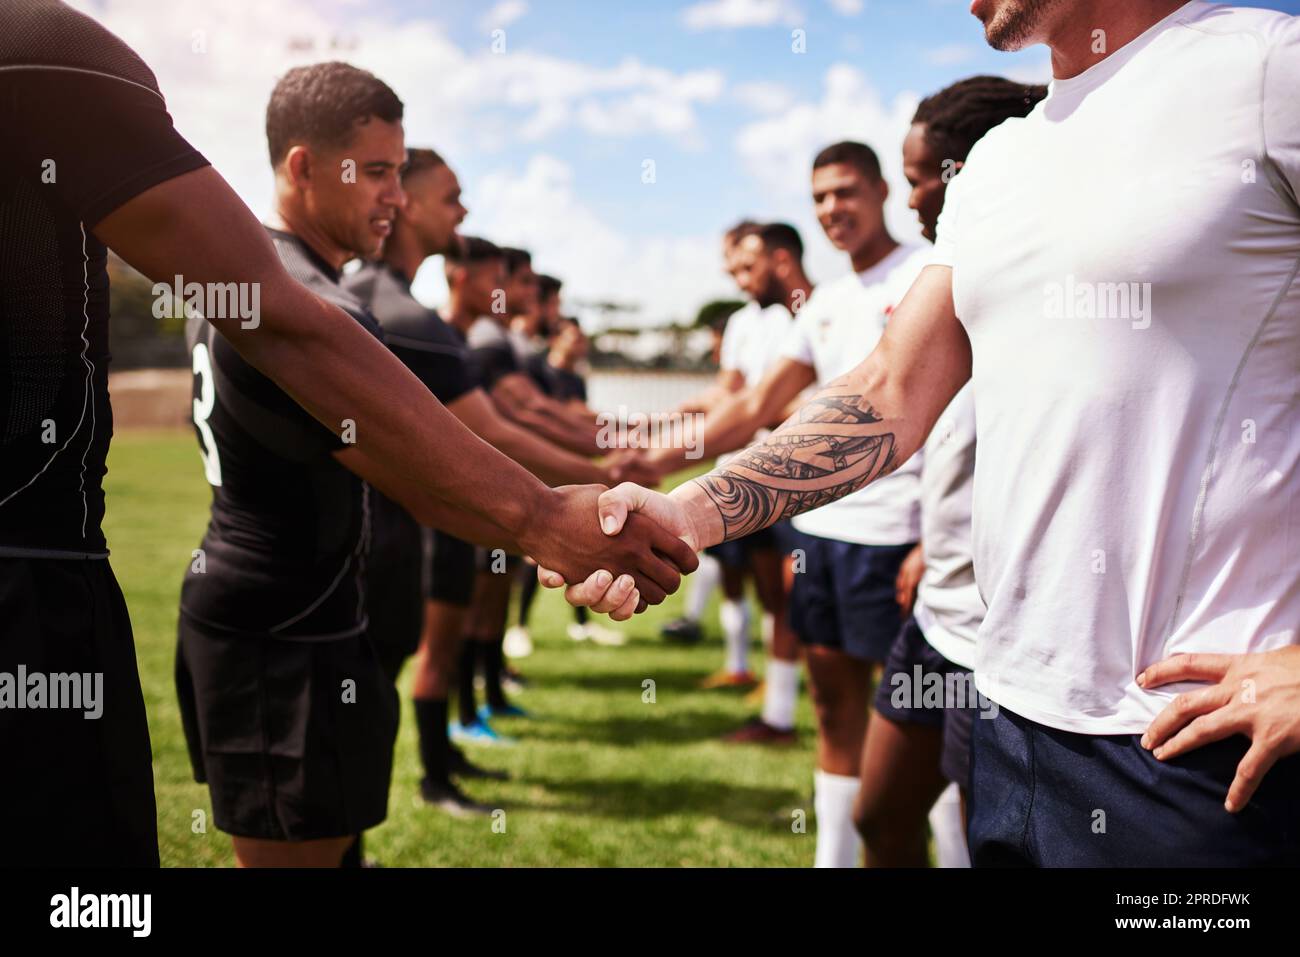 Jouez bien, jouez bien. Un groupe de jeunes joueurs de rugby se serrant la main sur le terrain. Banque D'Images